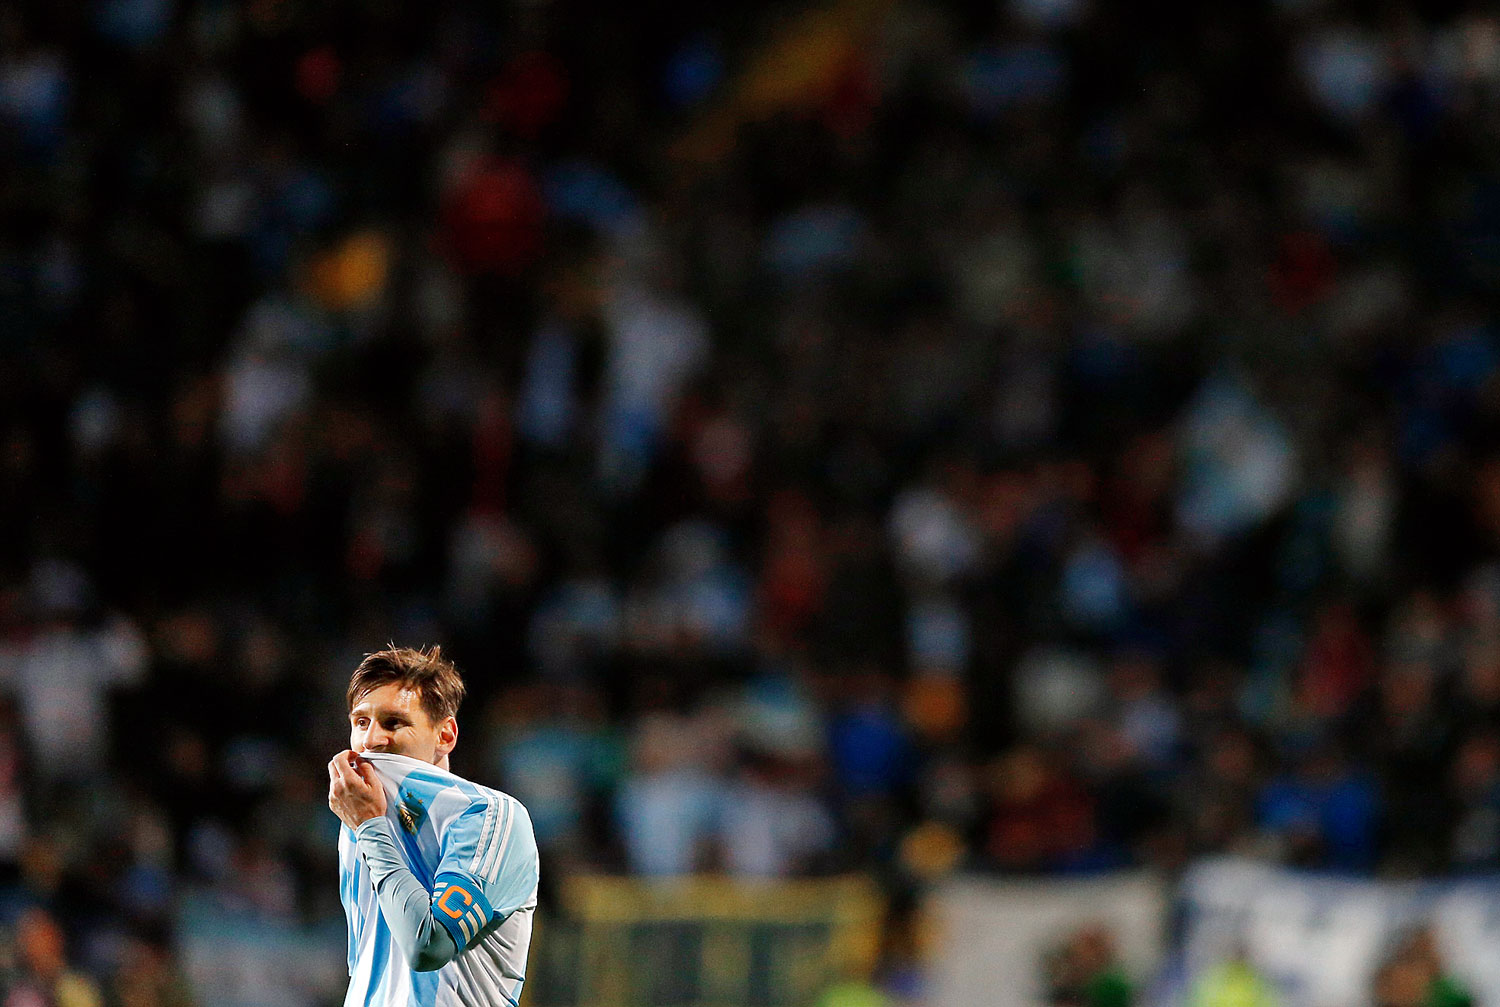 Centenáriumi válogatott mérkőzésén Messi a győztes csapat tagja volt, a nagy sikerre azonban még várnia kell